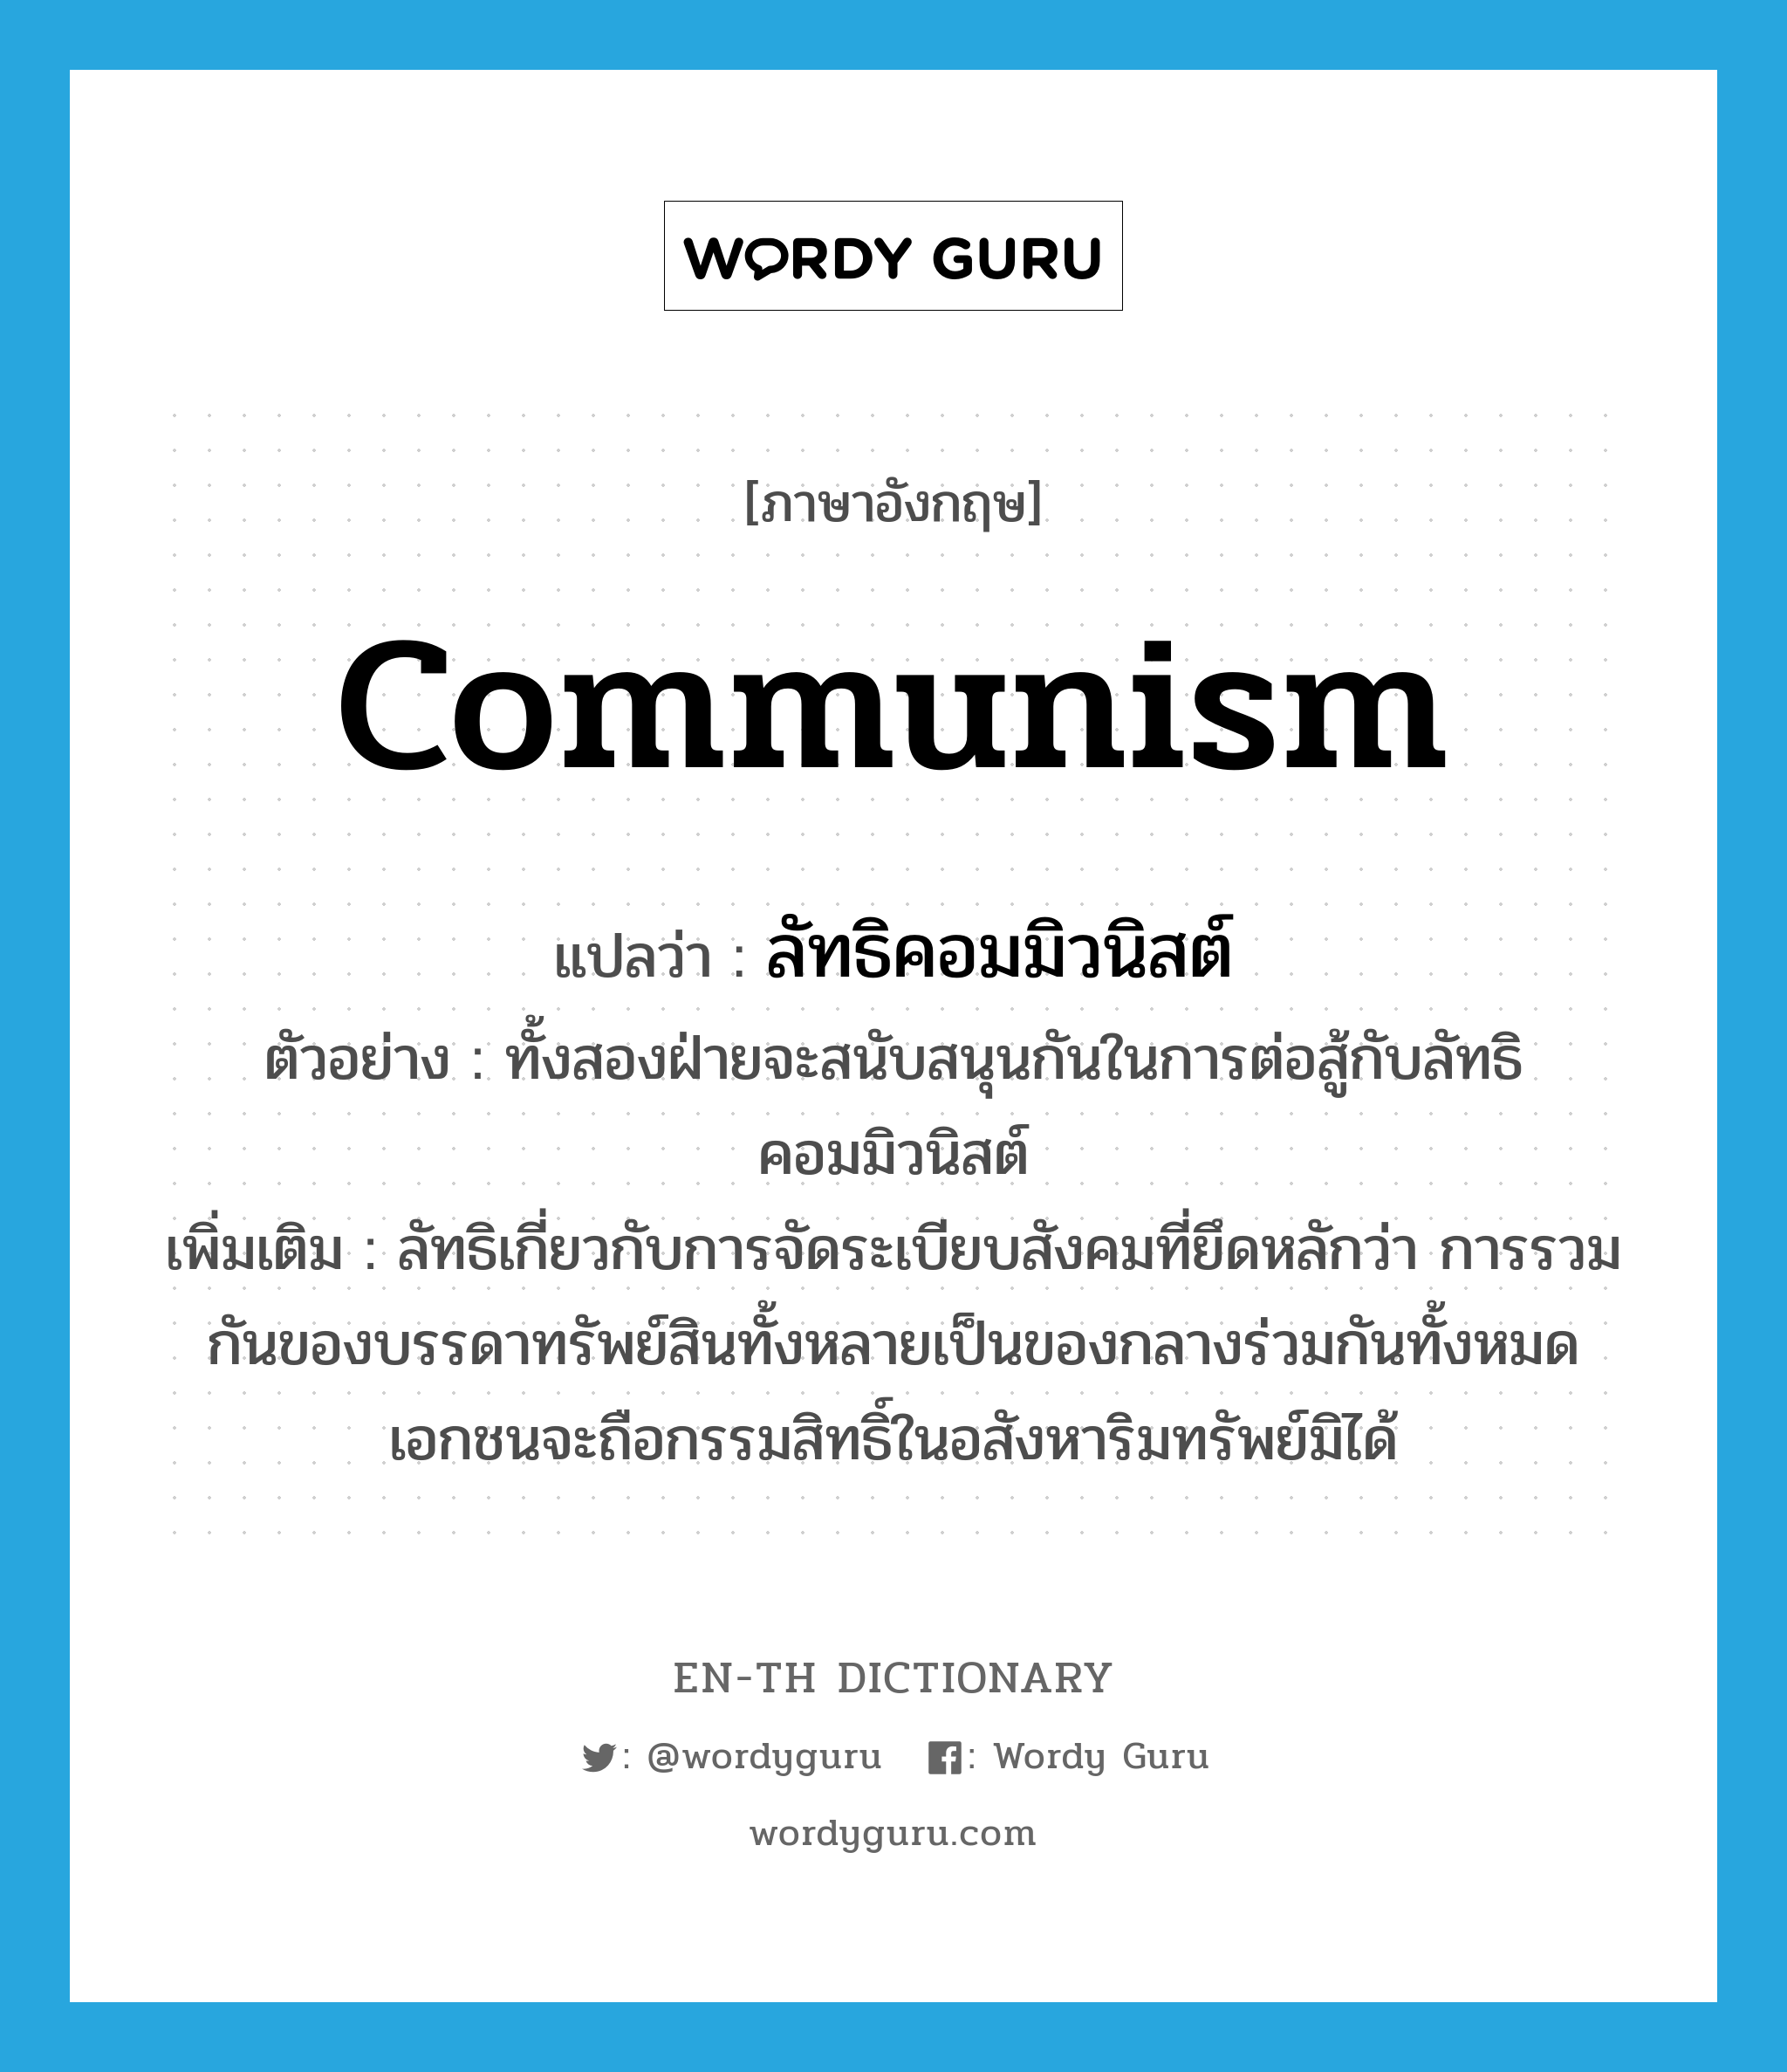 communism แปลว่า?, คำศัพท์ภาษาอังกฤษ communism แปลว่า ลัทธิคอมมิวนิสต์ ประเภท N ตัวอย่าง ทั้งสองฝ่ายจะสนับสนุนกันในการต่อสู้กับลัทธิคอมมิวนิสต์ เพิ่มเติม ลัทธิเกี่ยวกับการจัดระเบียบสังคมที่ยึดหลักว่า การรวมกันของบรรดาทรัพย์สินทั้งหลายเป็นของกลางร่วมกันทั้งหมด เอกชนจะถือกรรมสิทธิ์ในอสังหาริมทรัพย์มิได้ หมวด N